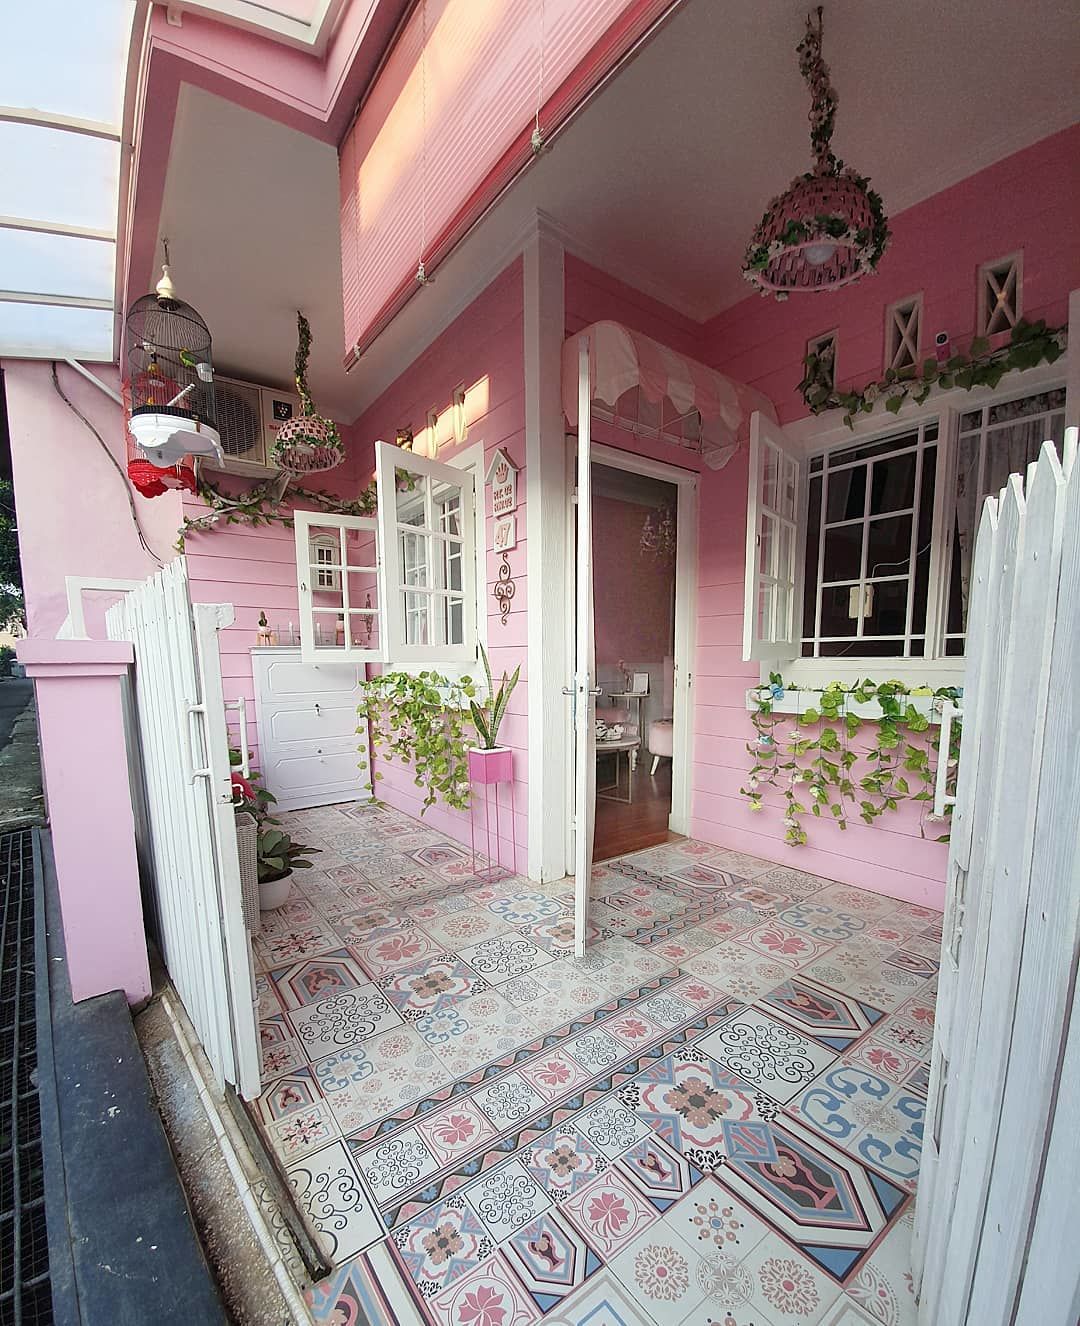 47 Gambar Desain Rumah Minimalis Warna Pink Terpopuler Yang Harus Kamu